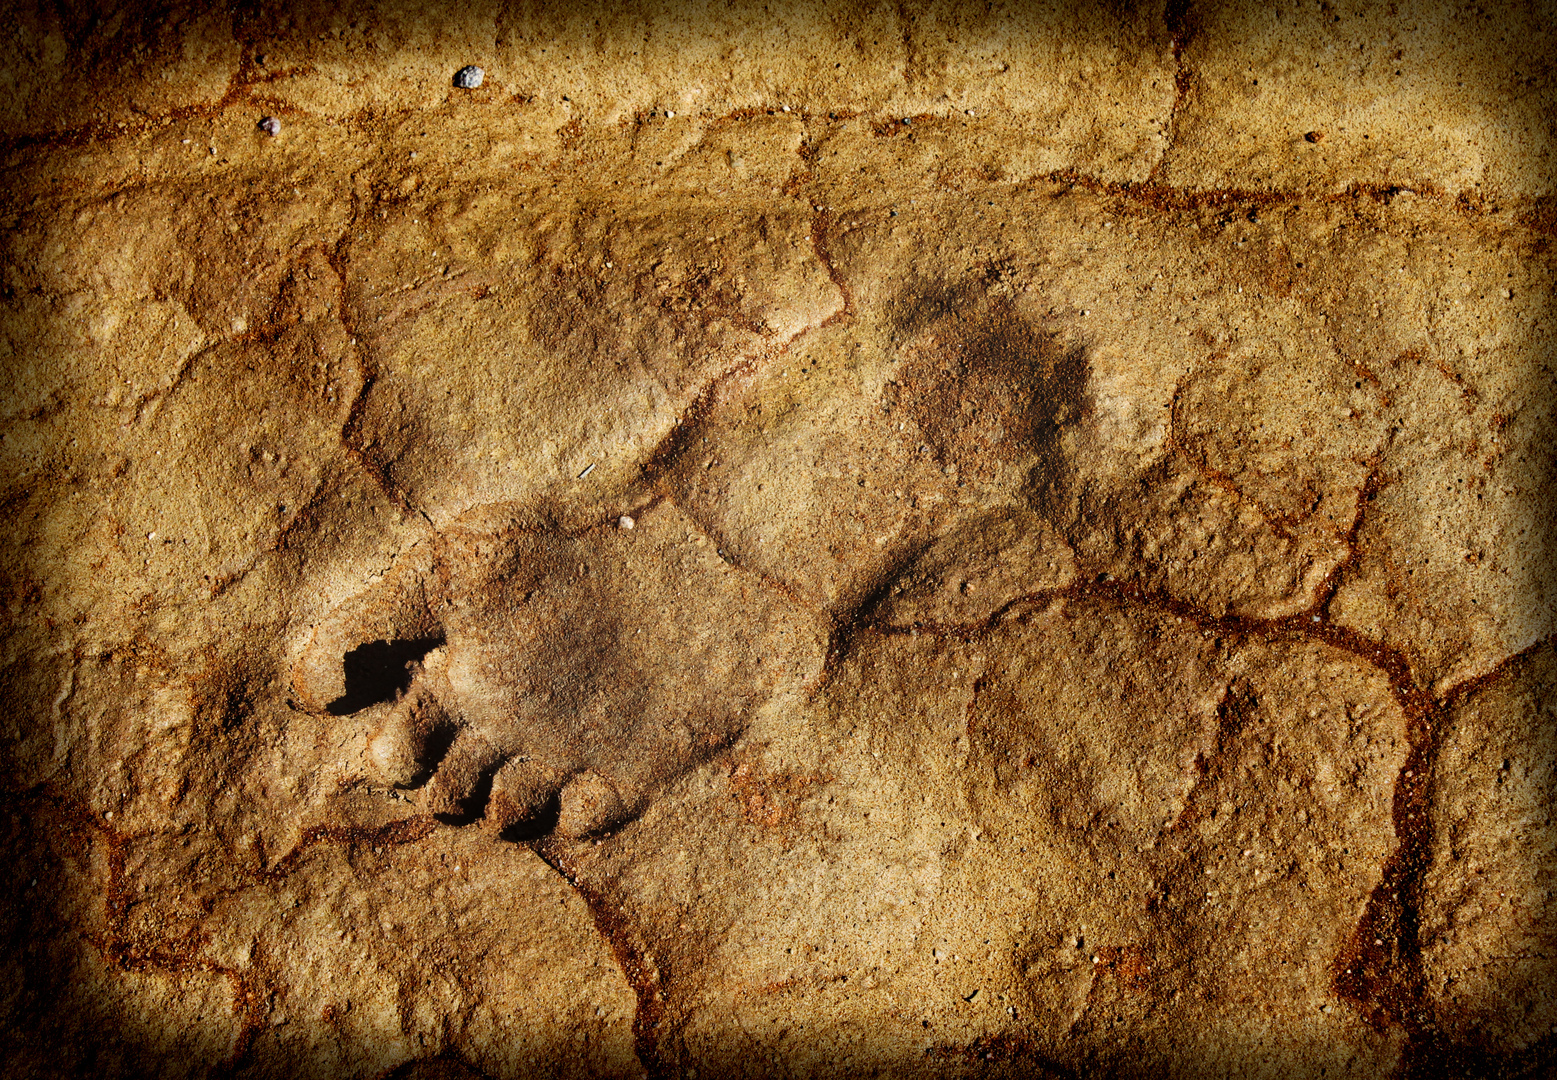 حل لغز آثار أقدام غريبة عمرها 3.7 مليون سنة اكتشفت في تنزانيا